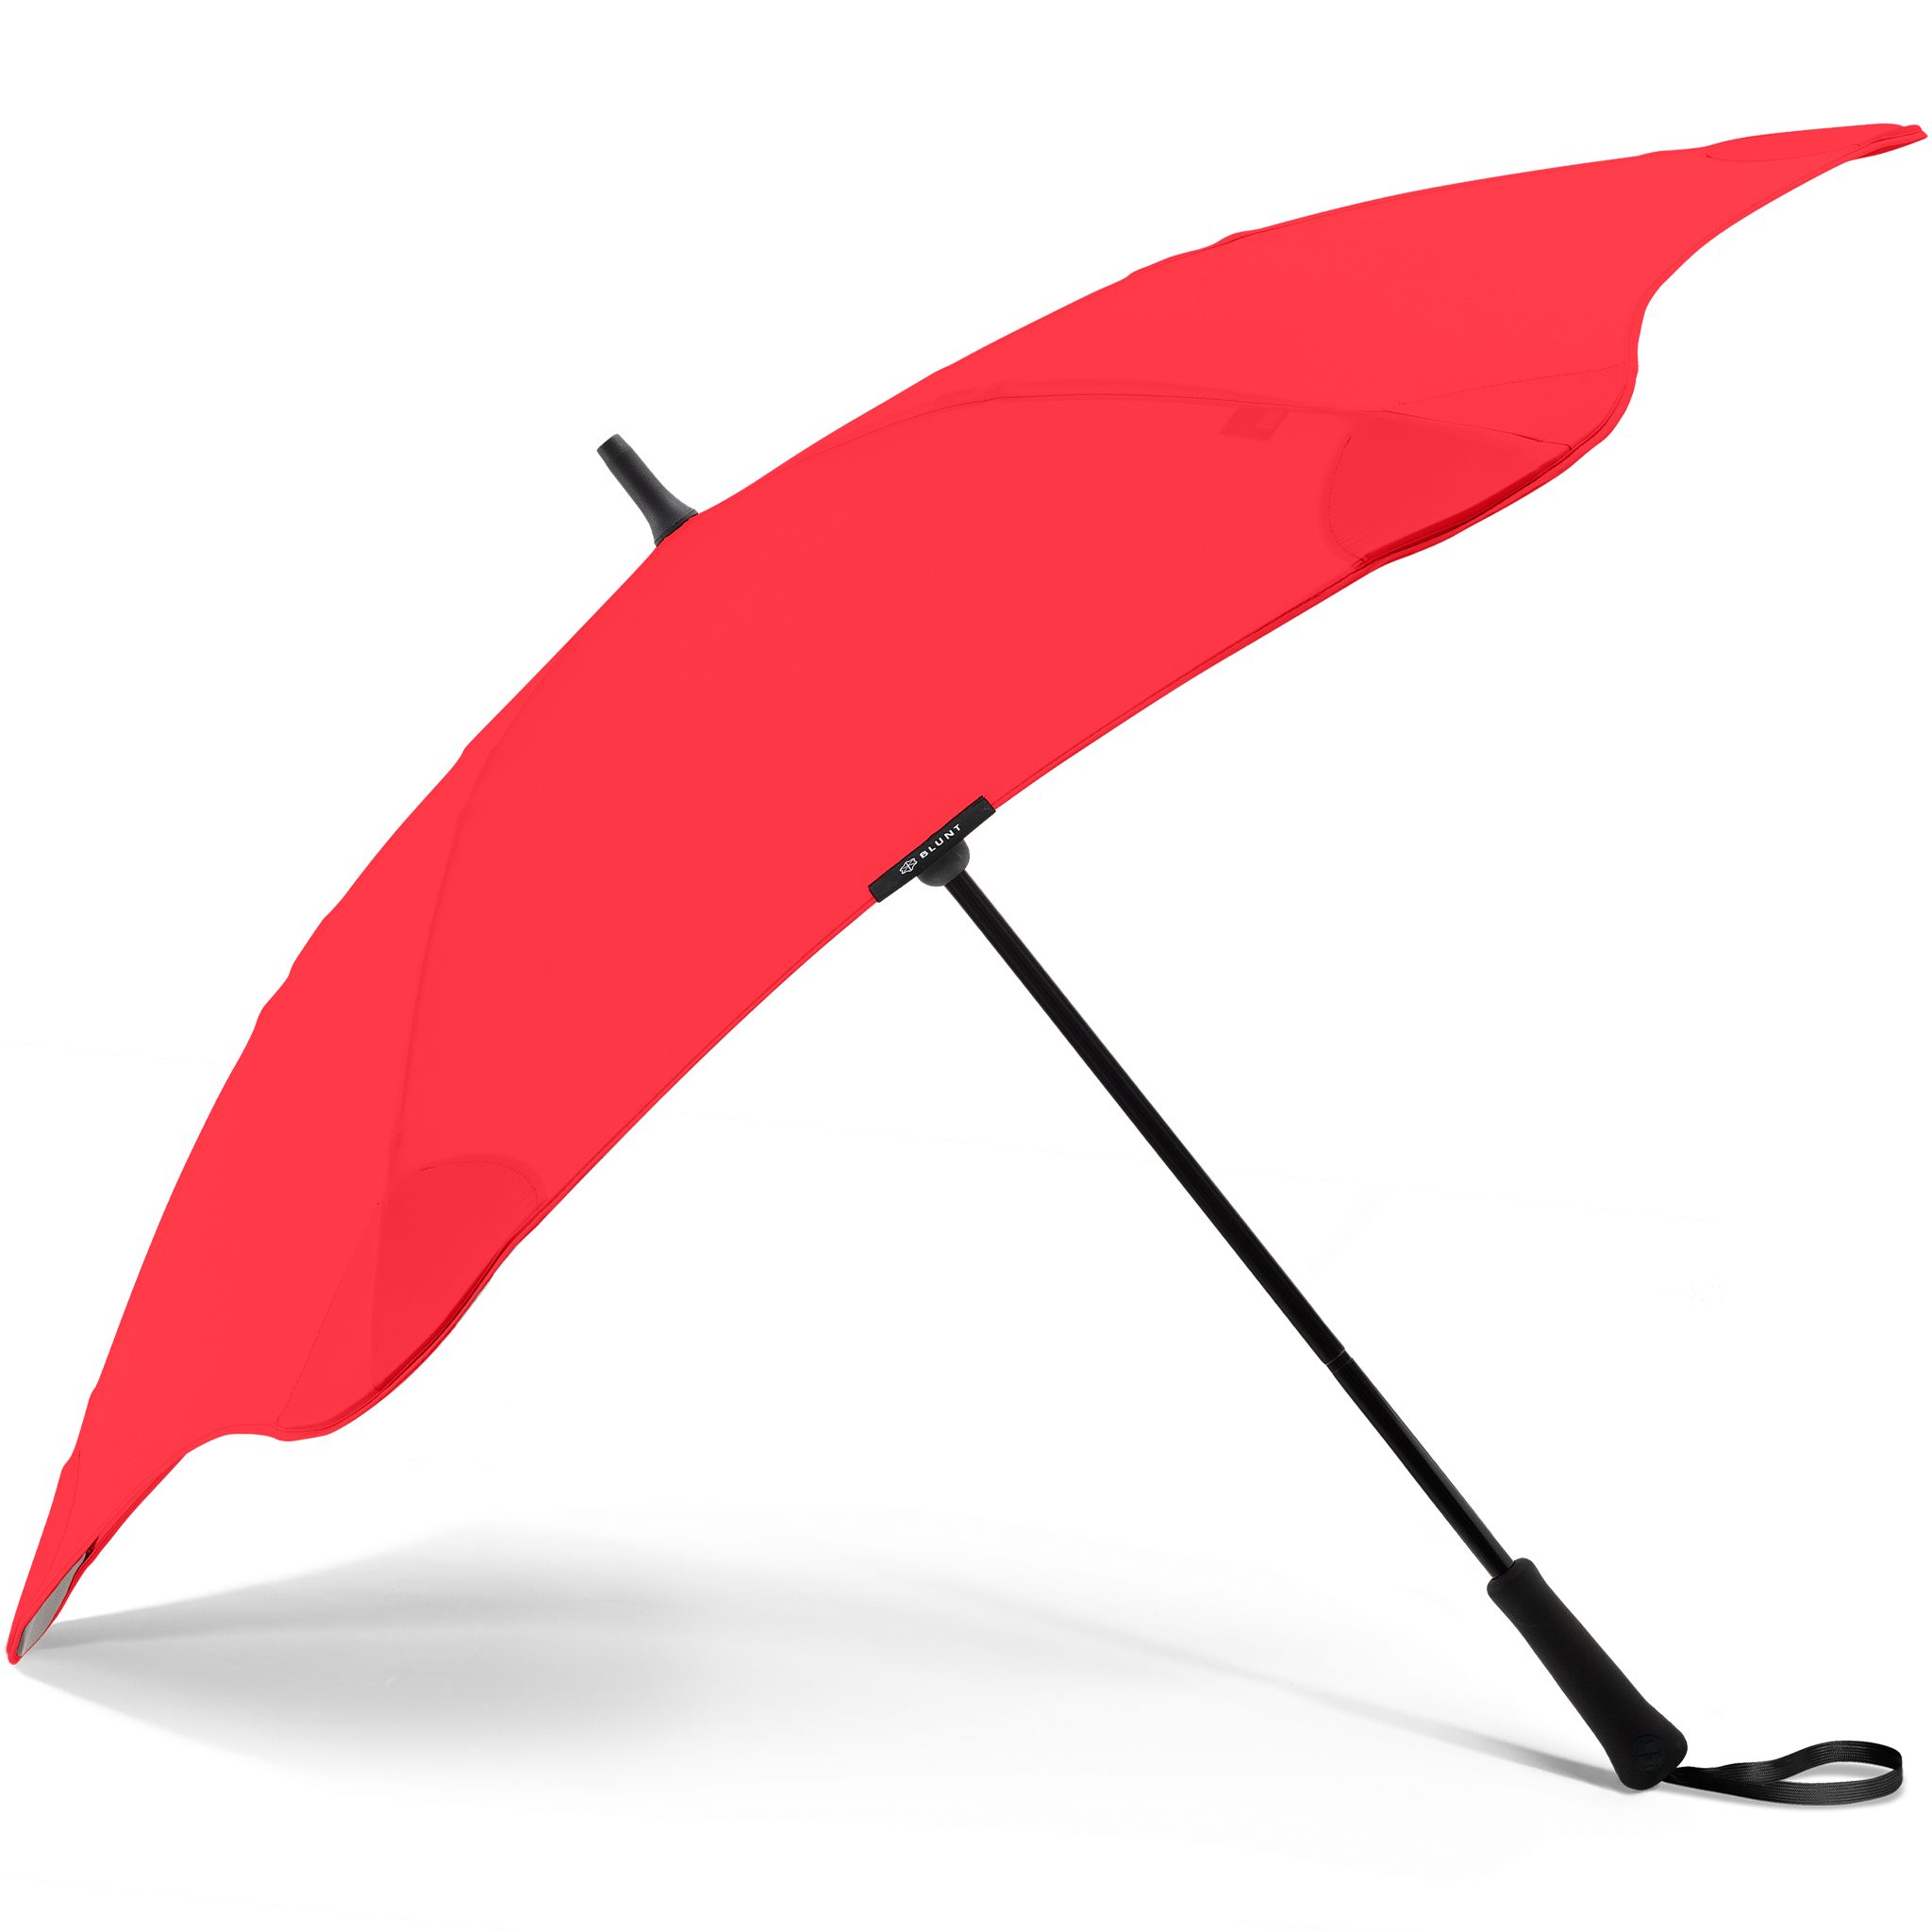 Stockregenschirm patentierte rot Silhouette einzigartige Classic, herausragende Blunt Technologie,